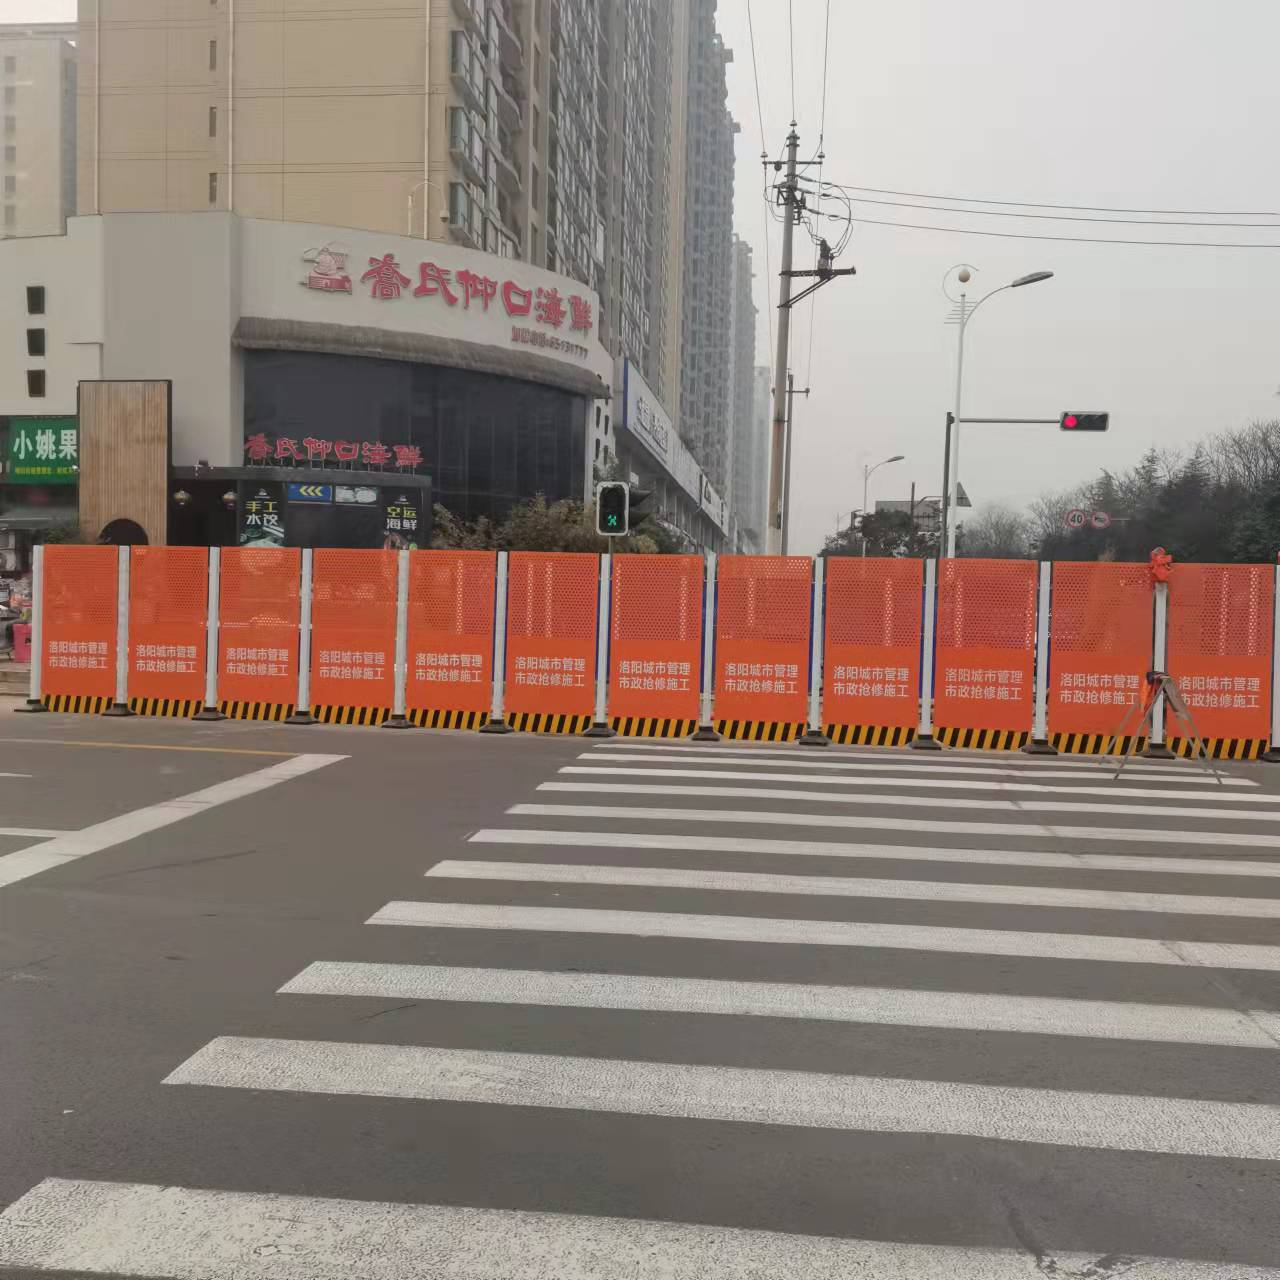 红色/橙色/蓝色 洛阳市政热力管道抢修围挡(图6)